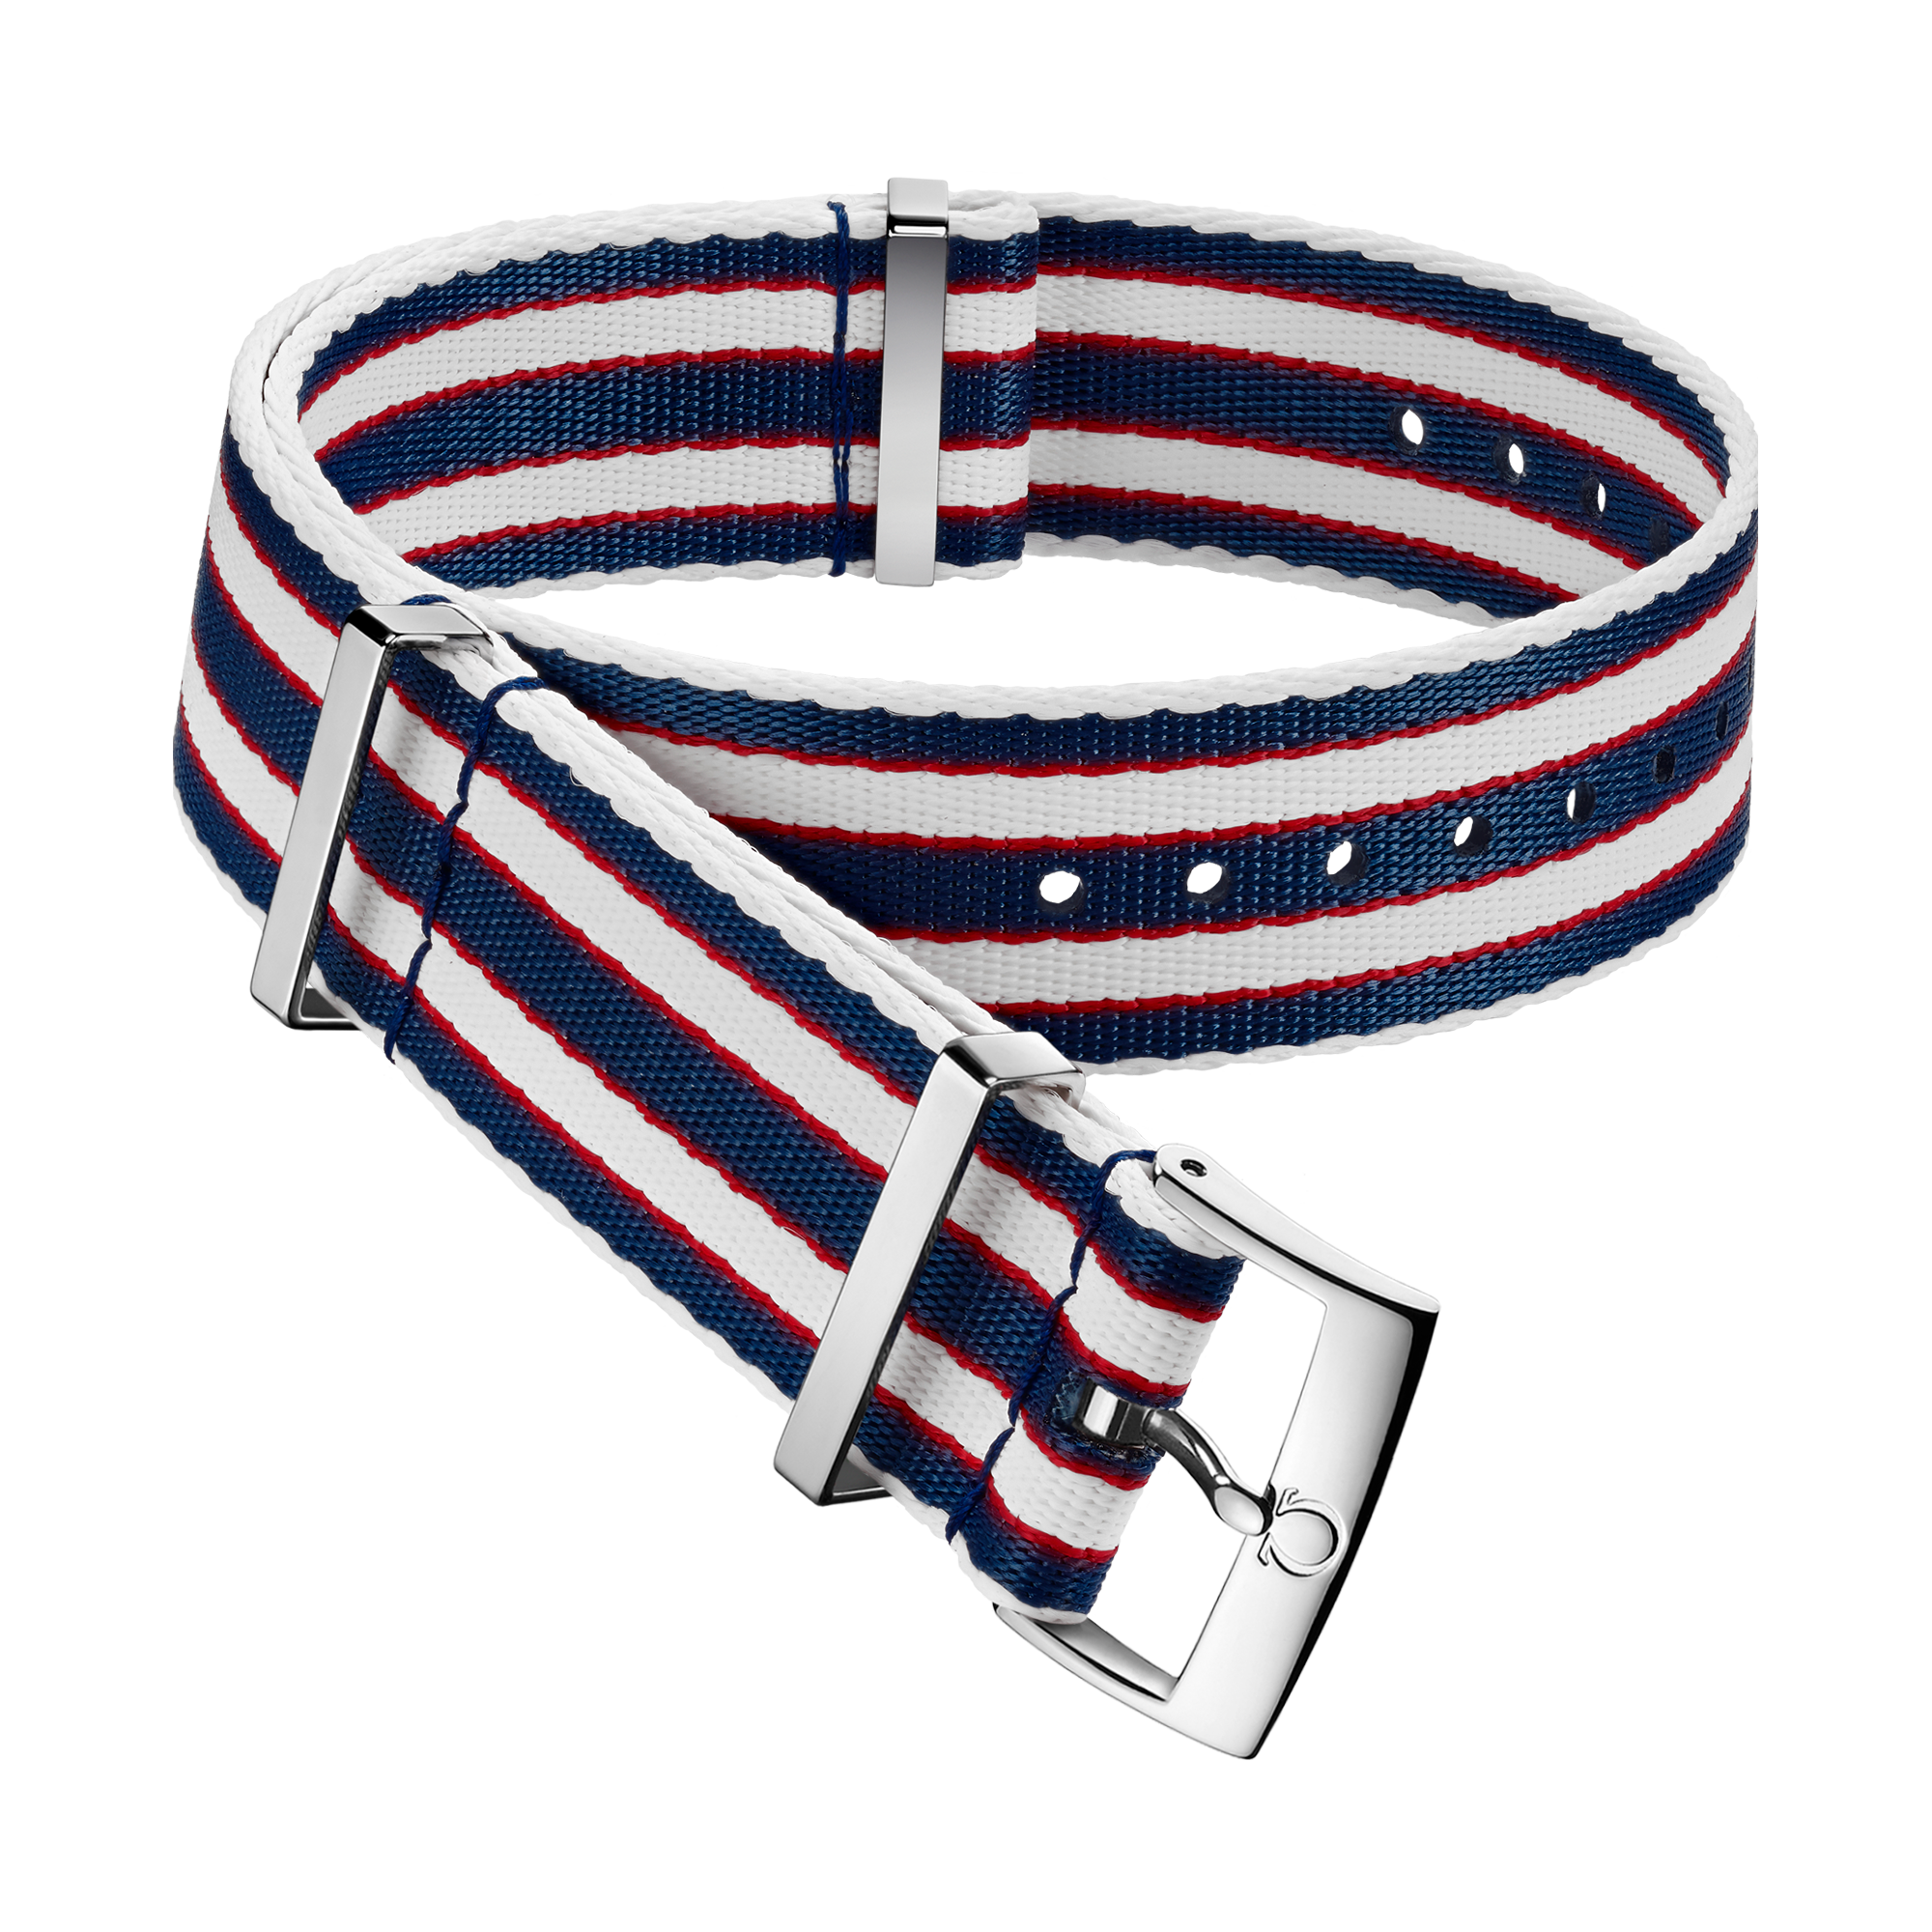 Ремешок NATO - Полиамидный ремешок с полосками синего, красного и белого цветов - 031CWZ010694